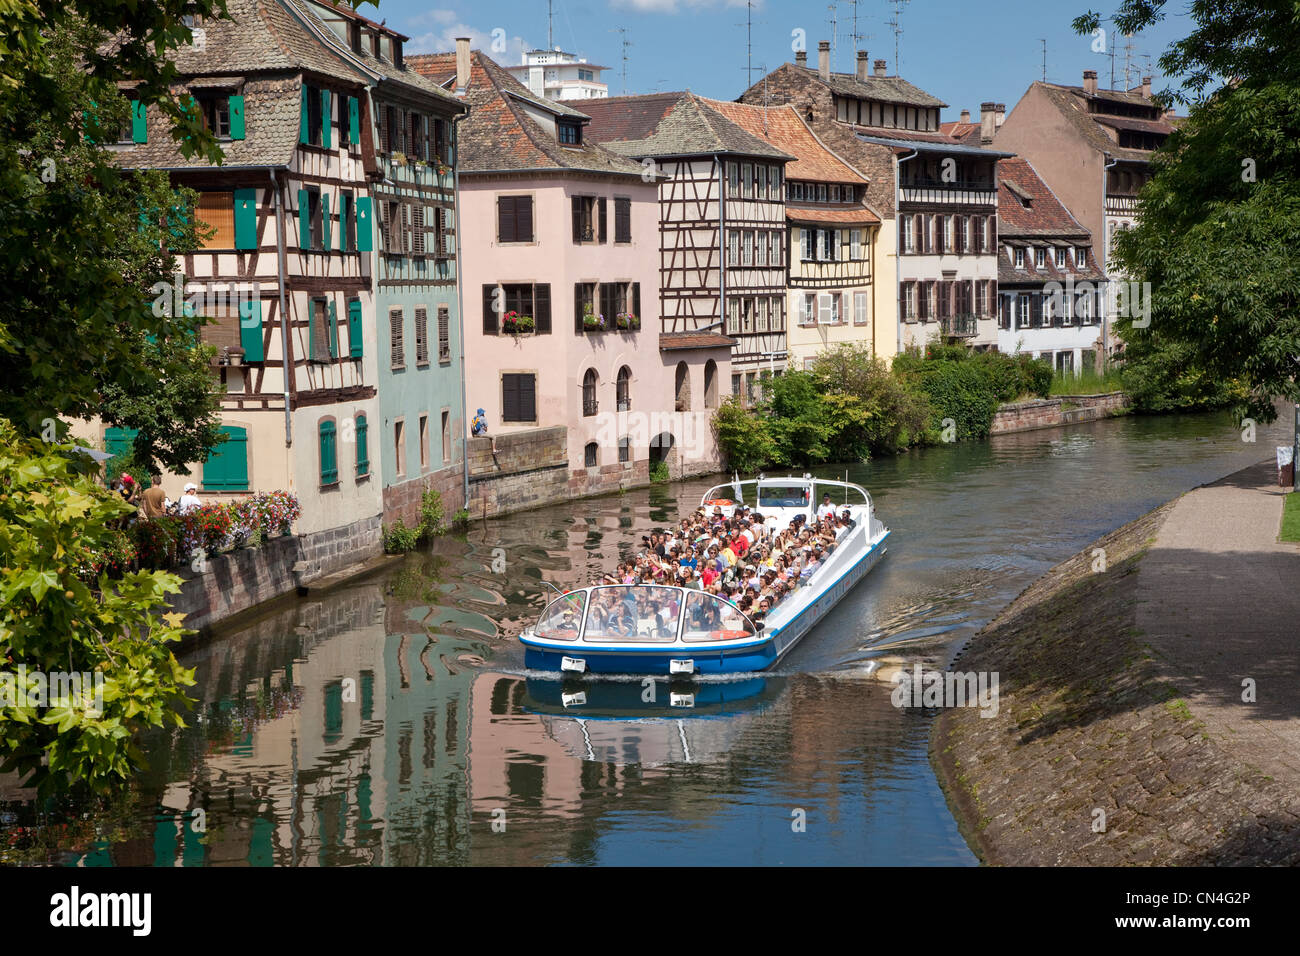 Frankreich, Bas-Rhin, Straßburg, Altstadt Weltkulturerbe von UNESCO, La Petite France-Riverboat für Touristen auf einem Kanal Stockfoto